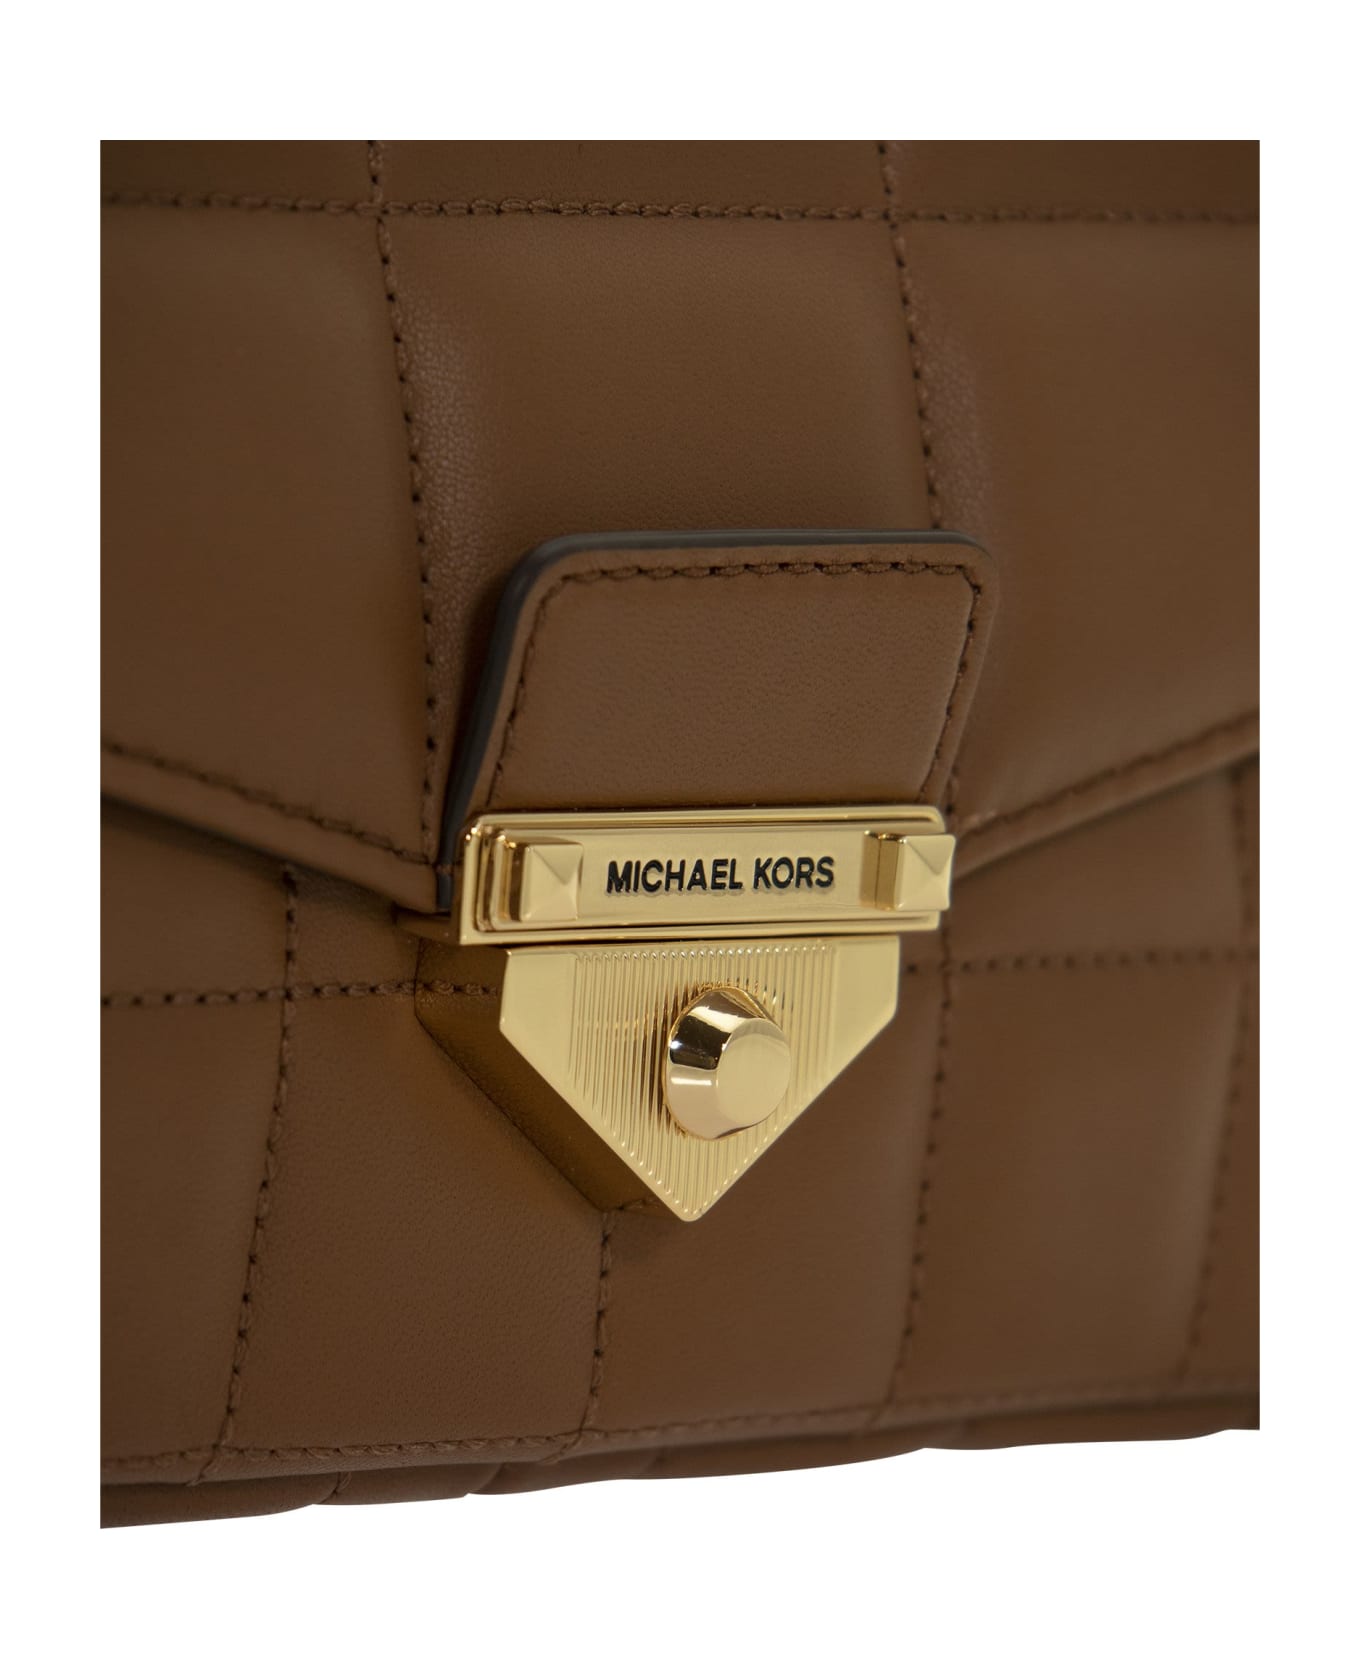 Michael Kors Soho - Quilted Leather Shoulder Bag - Brown